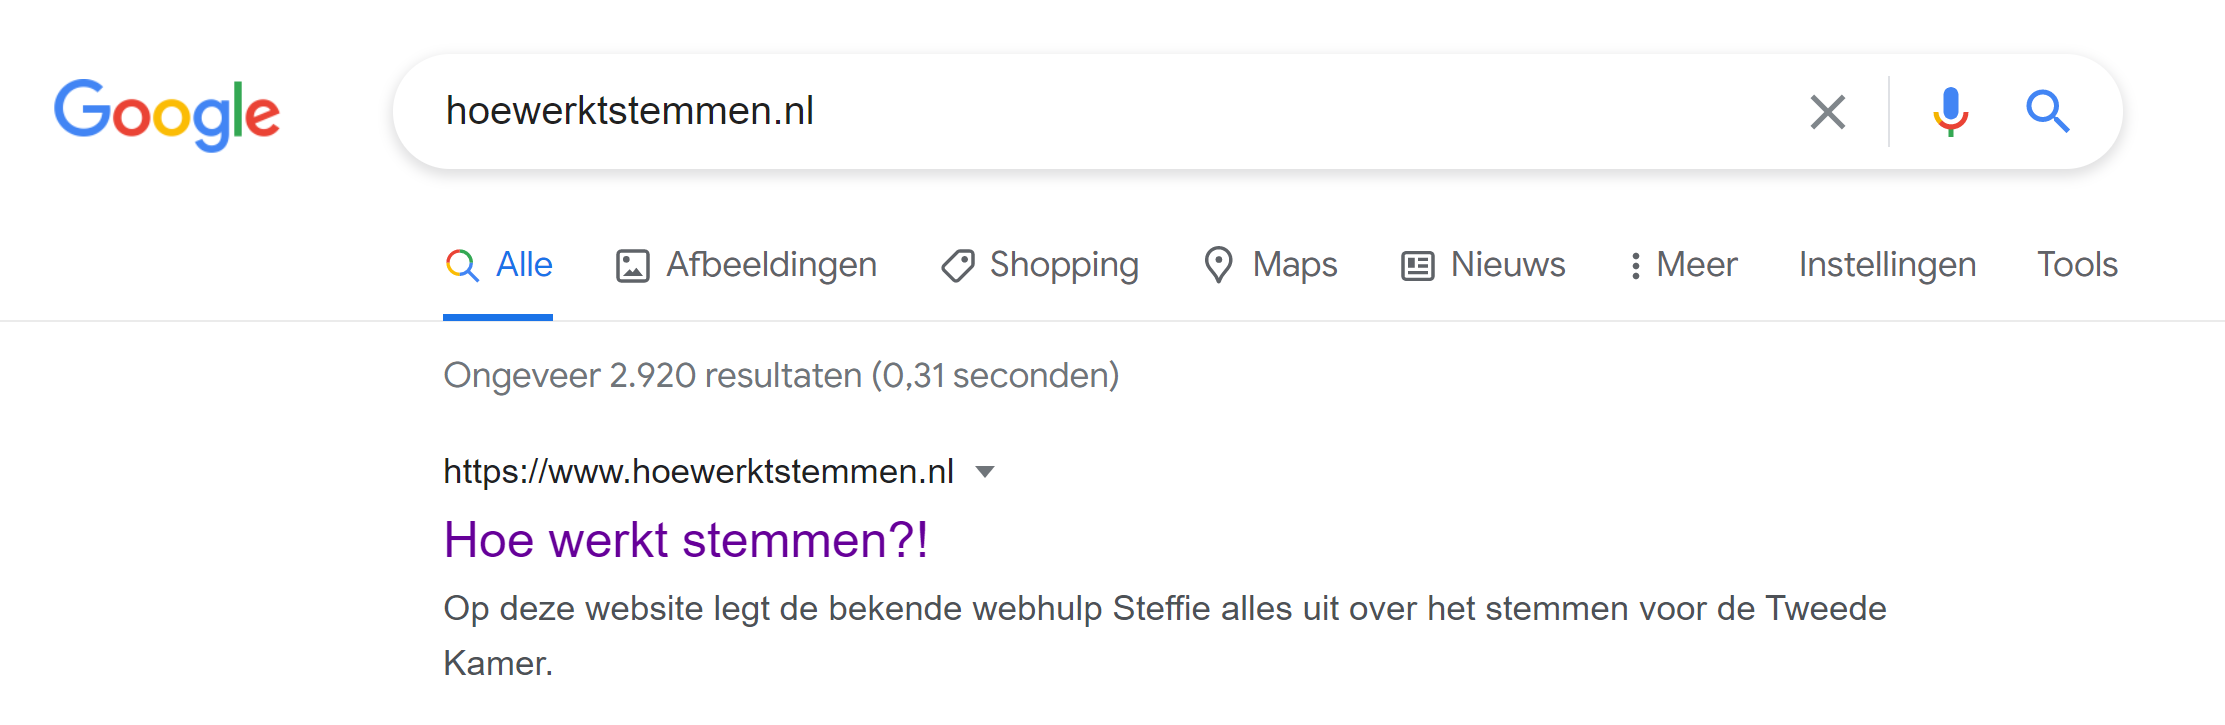 Hoewerktstemmen.nl staat op meer dan 2000 websites en urls vermeld in Google.